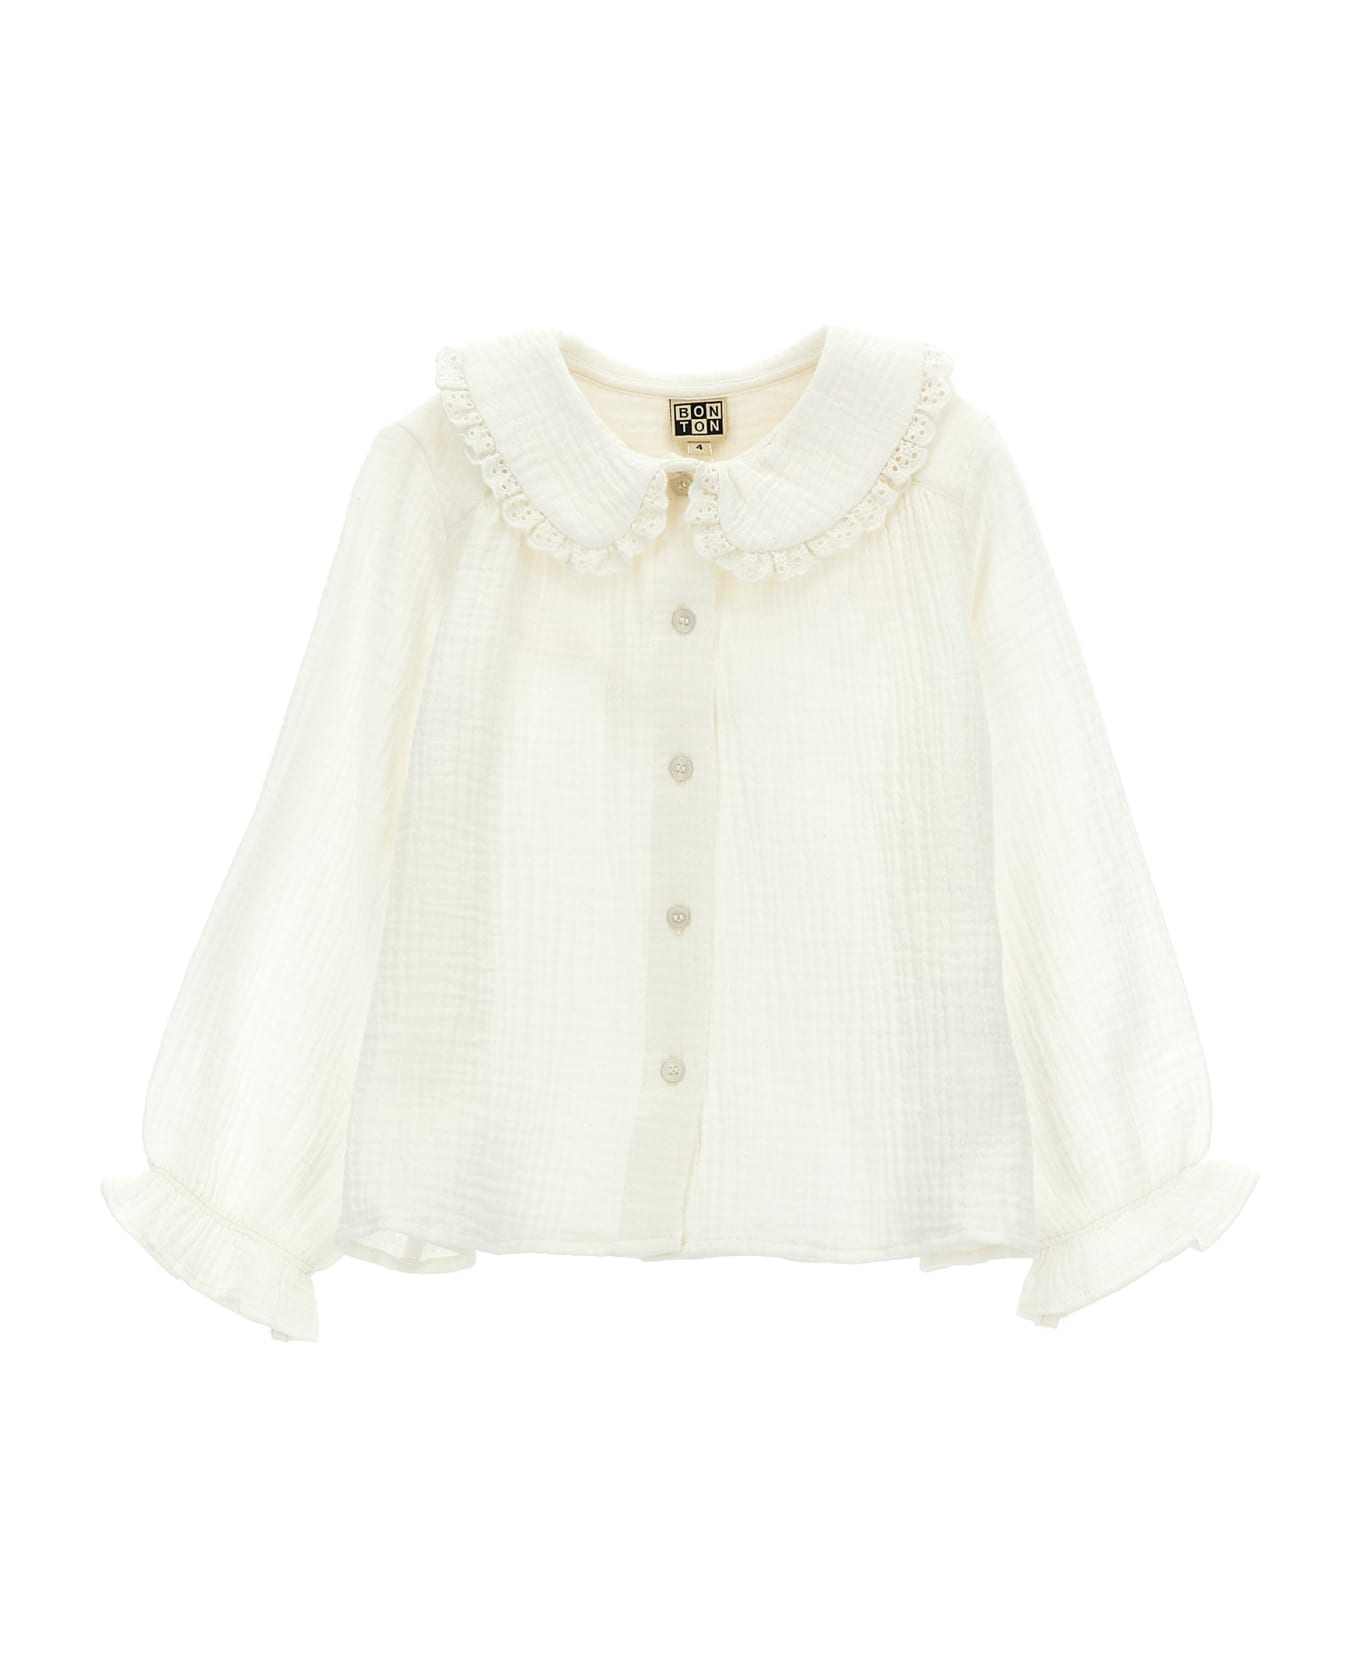 Bonton Collar Shirt - White